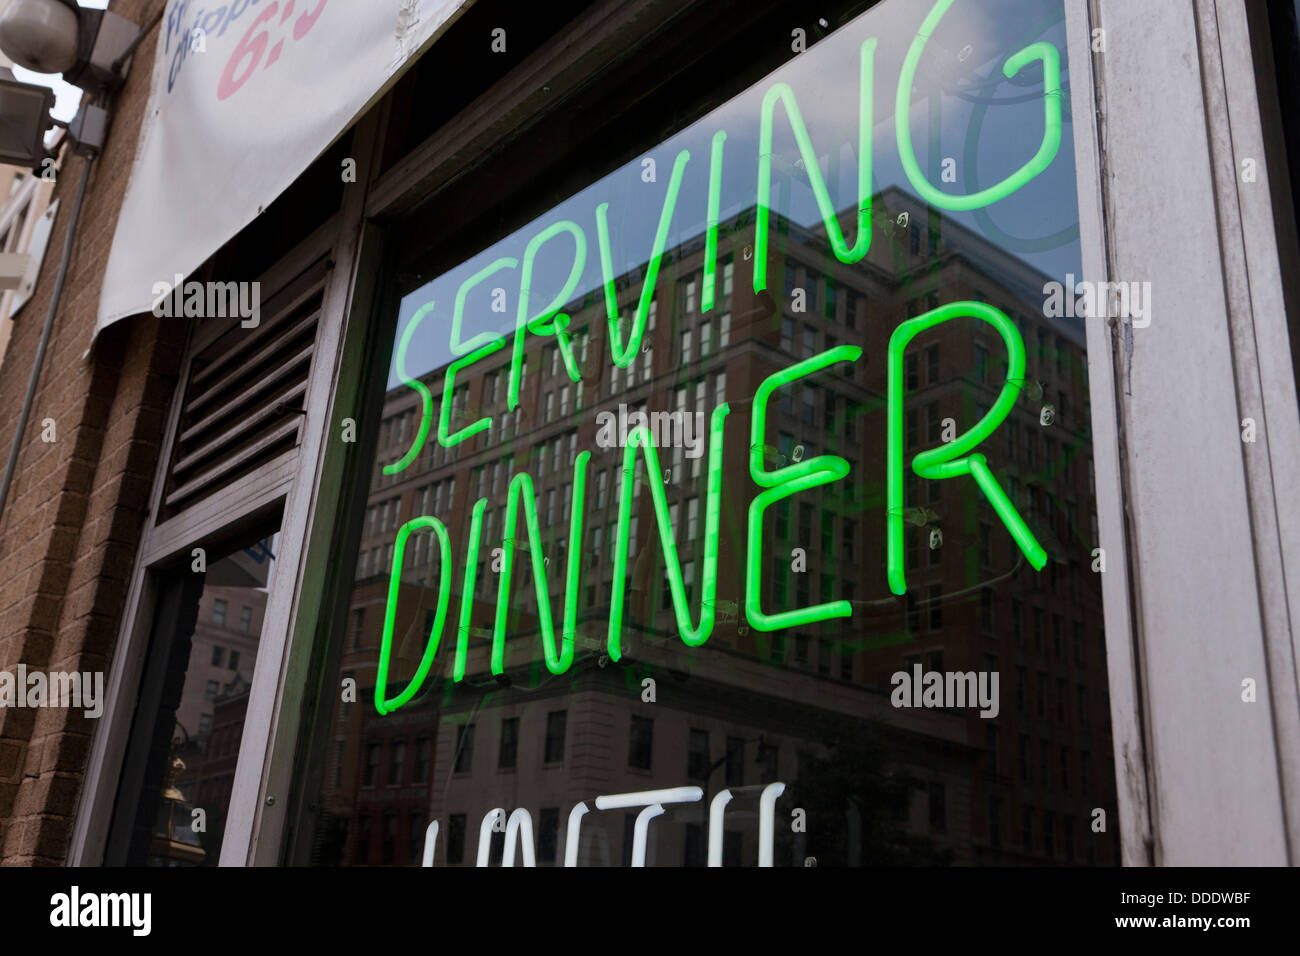 'Serving Dinner' restaurant neon sign Stock Photo